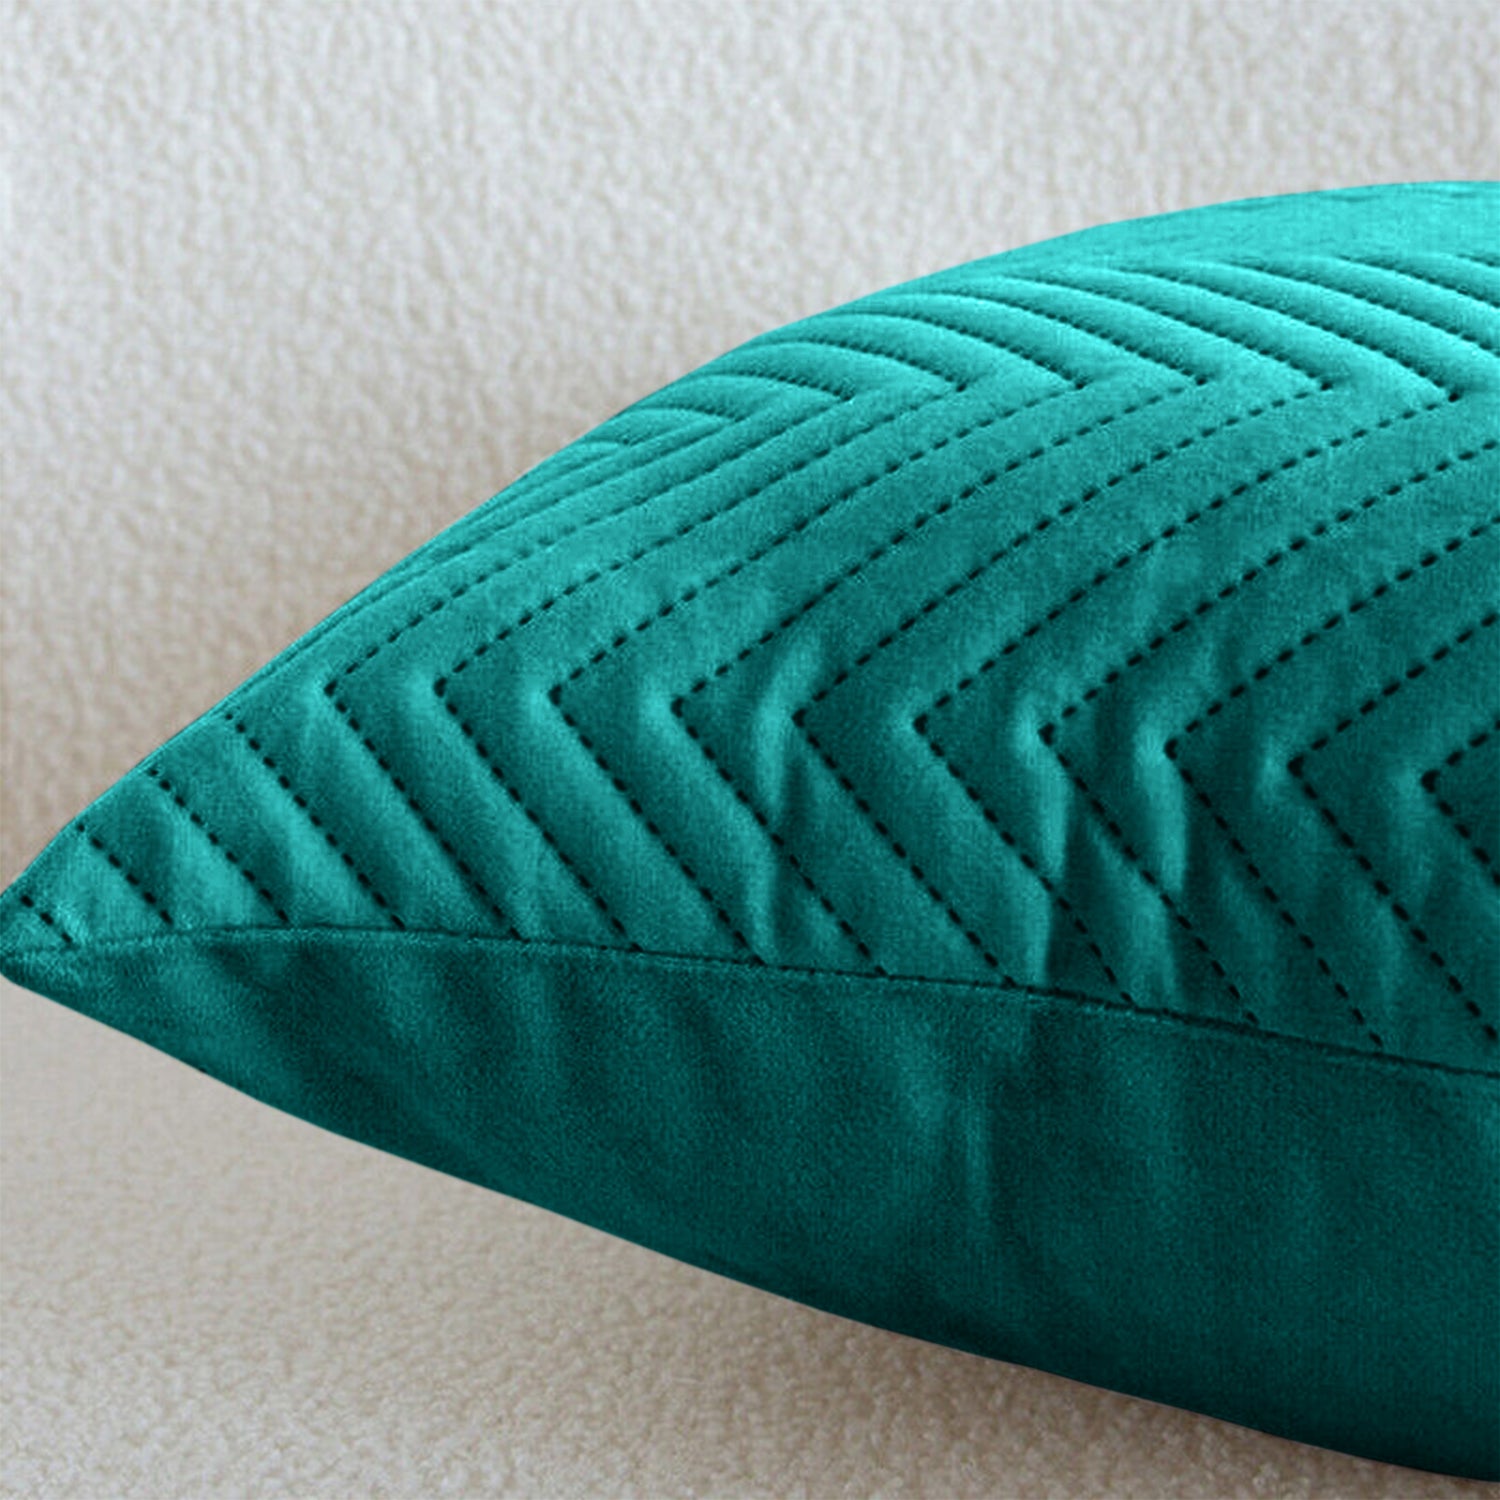 Emerald Chevron Design Velvet Cushion Covers